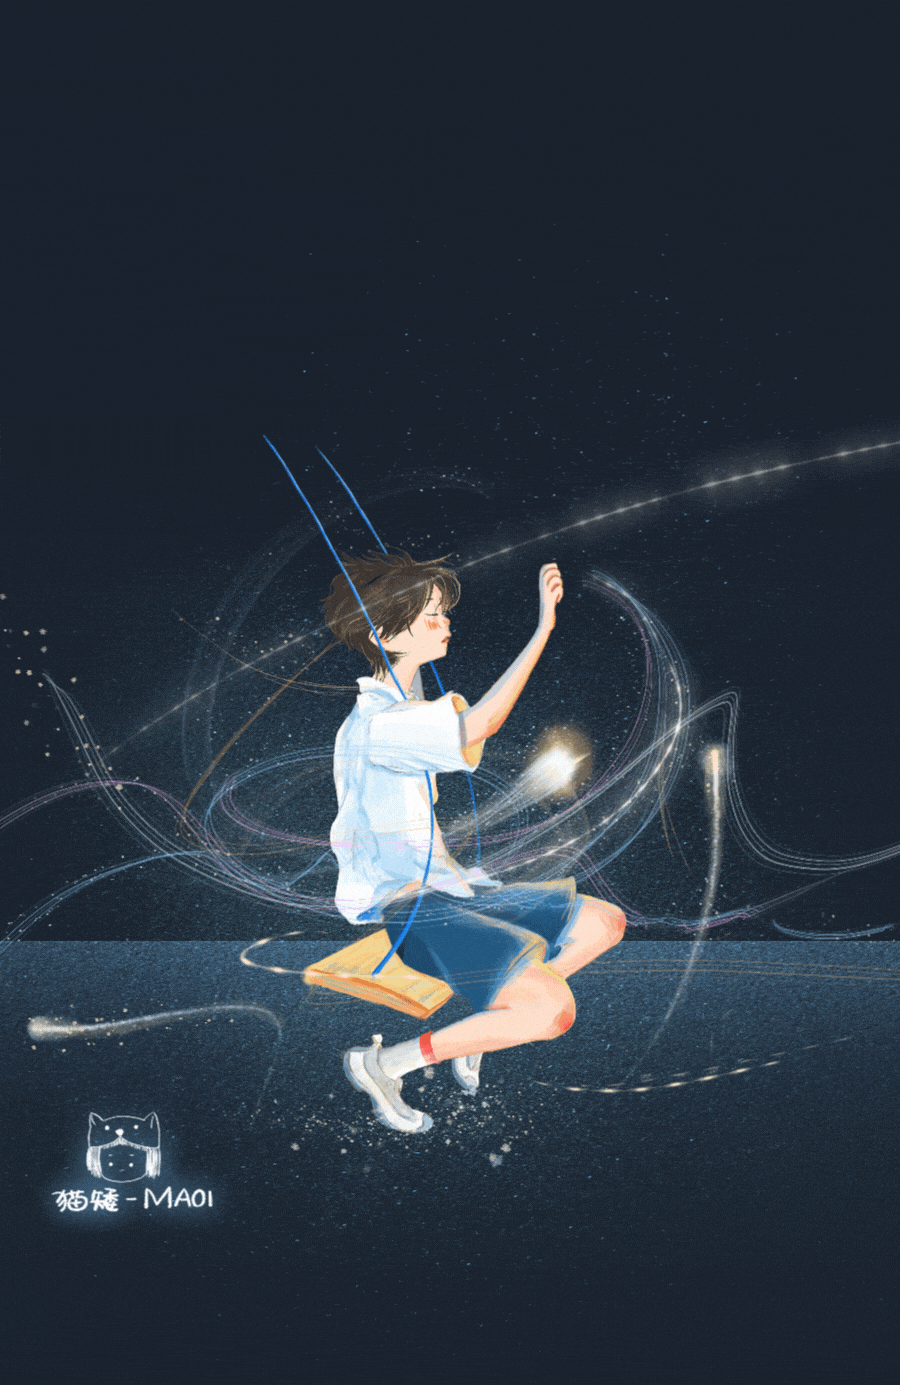 Анимация Мальчик сидит на качелях над водой на фоне падающей звезды, by Maoi, гифка Мальчик сидит на качелях над водой на фоне падающей звезды, by Maoi